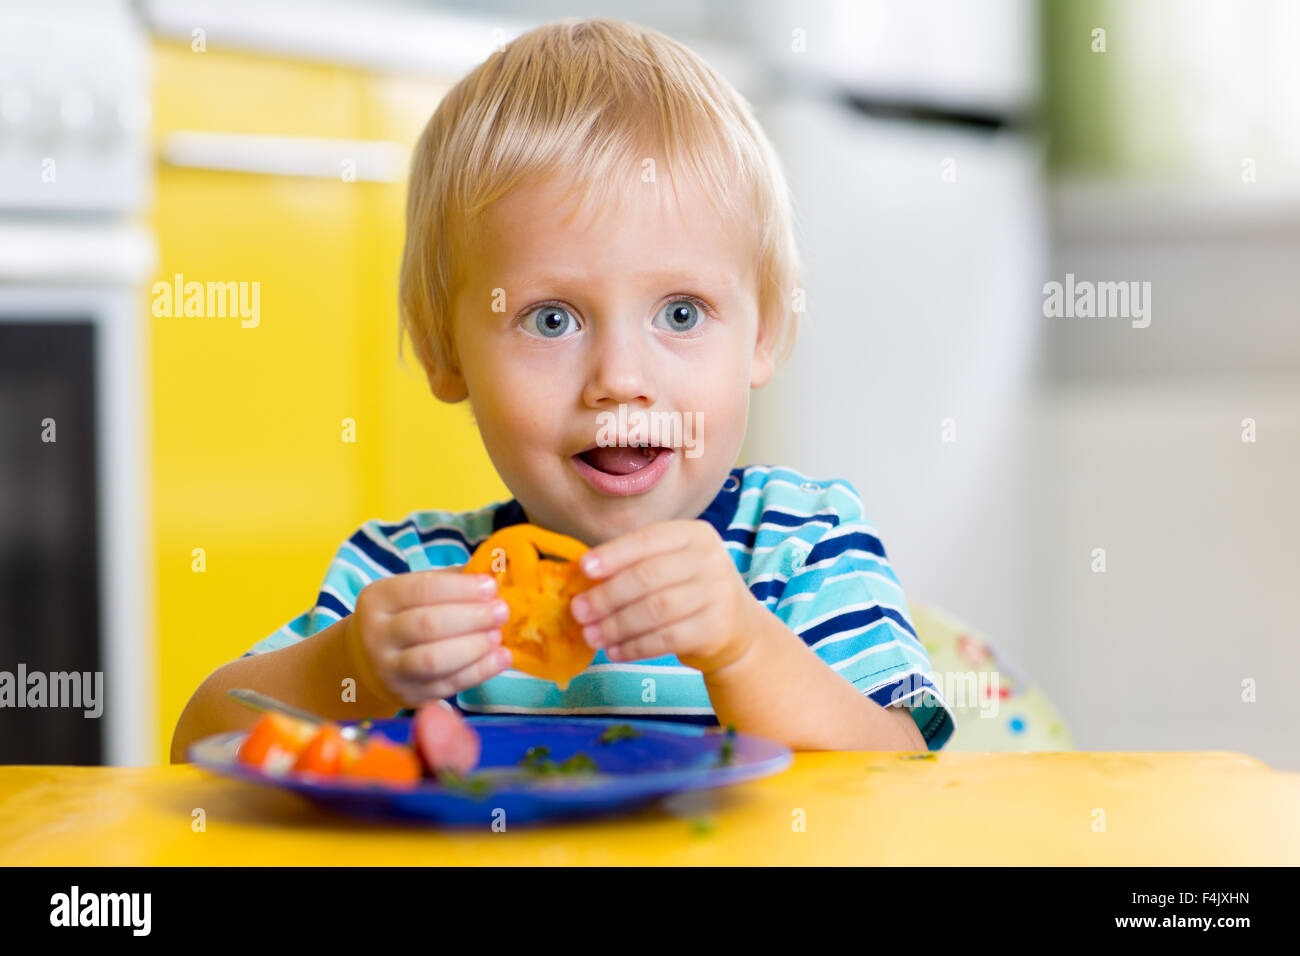 Nettes Kind junge isst gesund essen Gemüse Stockfoto